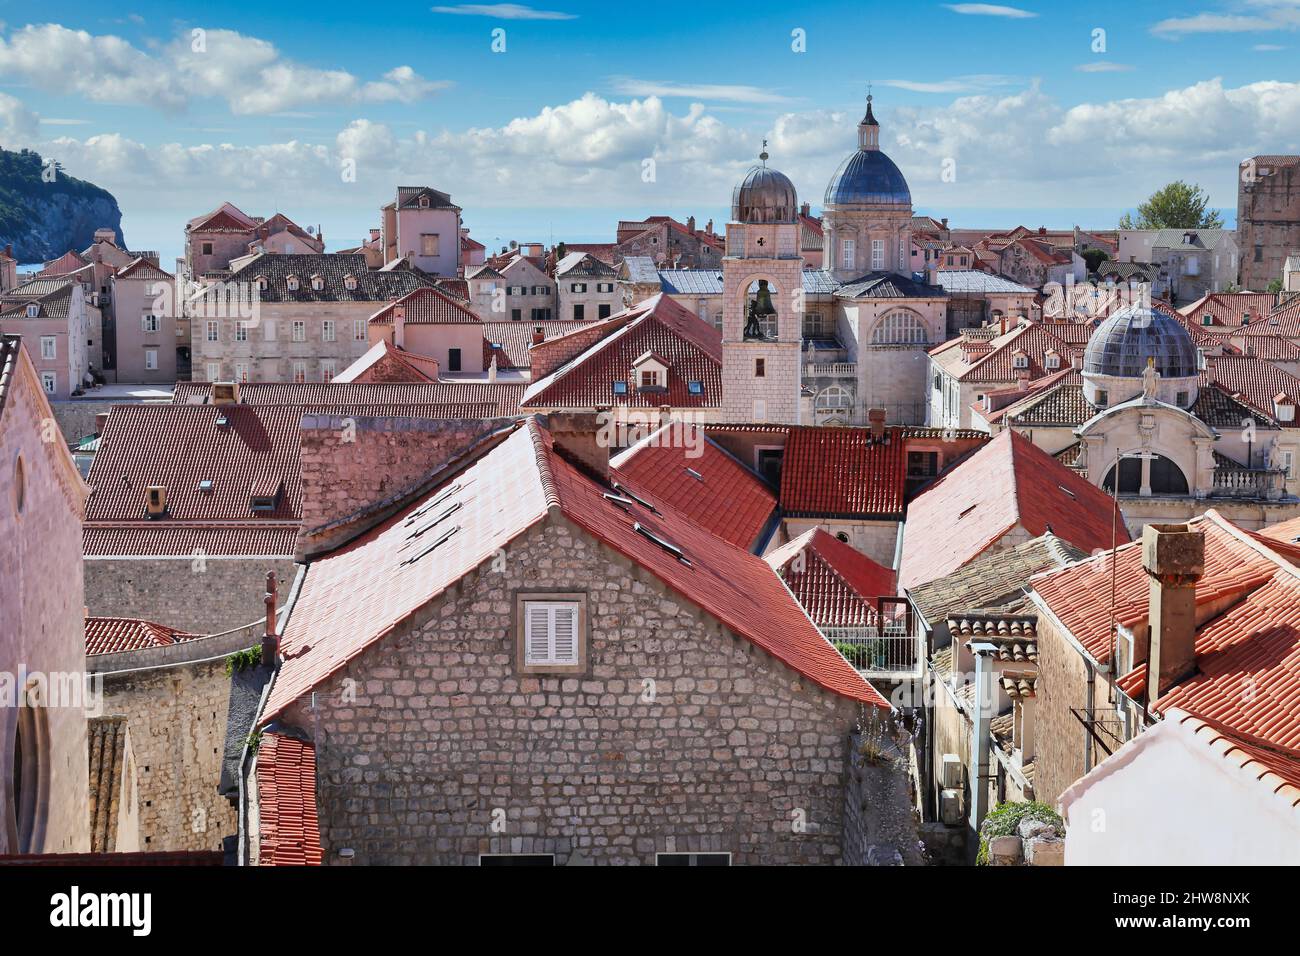 Dubrovnik, Croazia - veduta aerea dalle mura della città attraverso i tetti di terracotta rossa della città vecchia al mare Adriatico Foto Stock